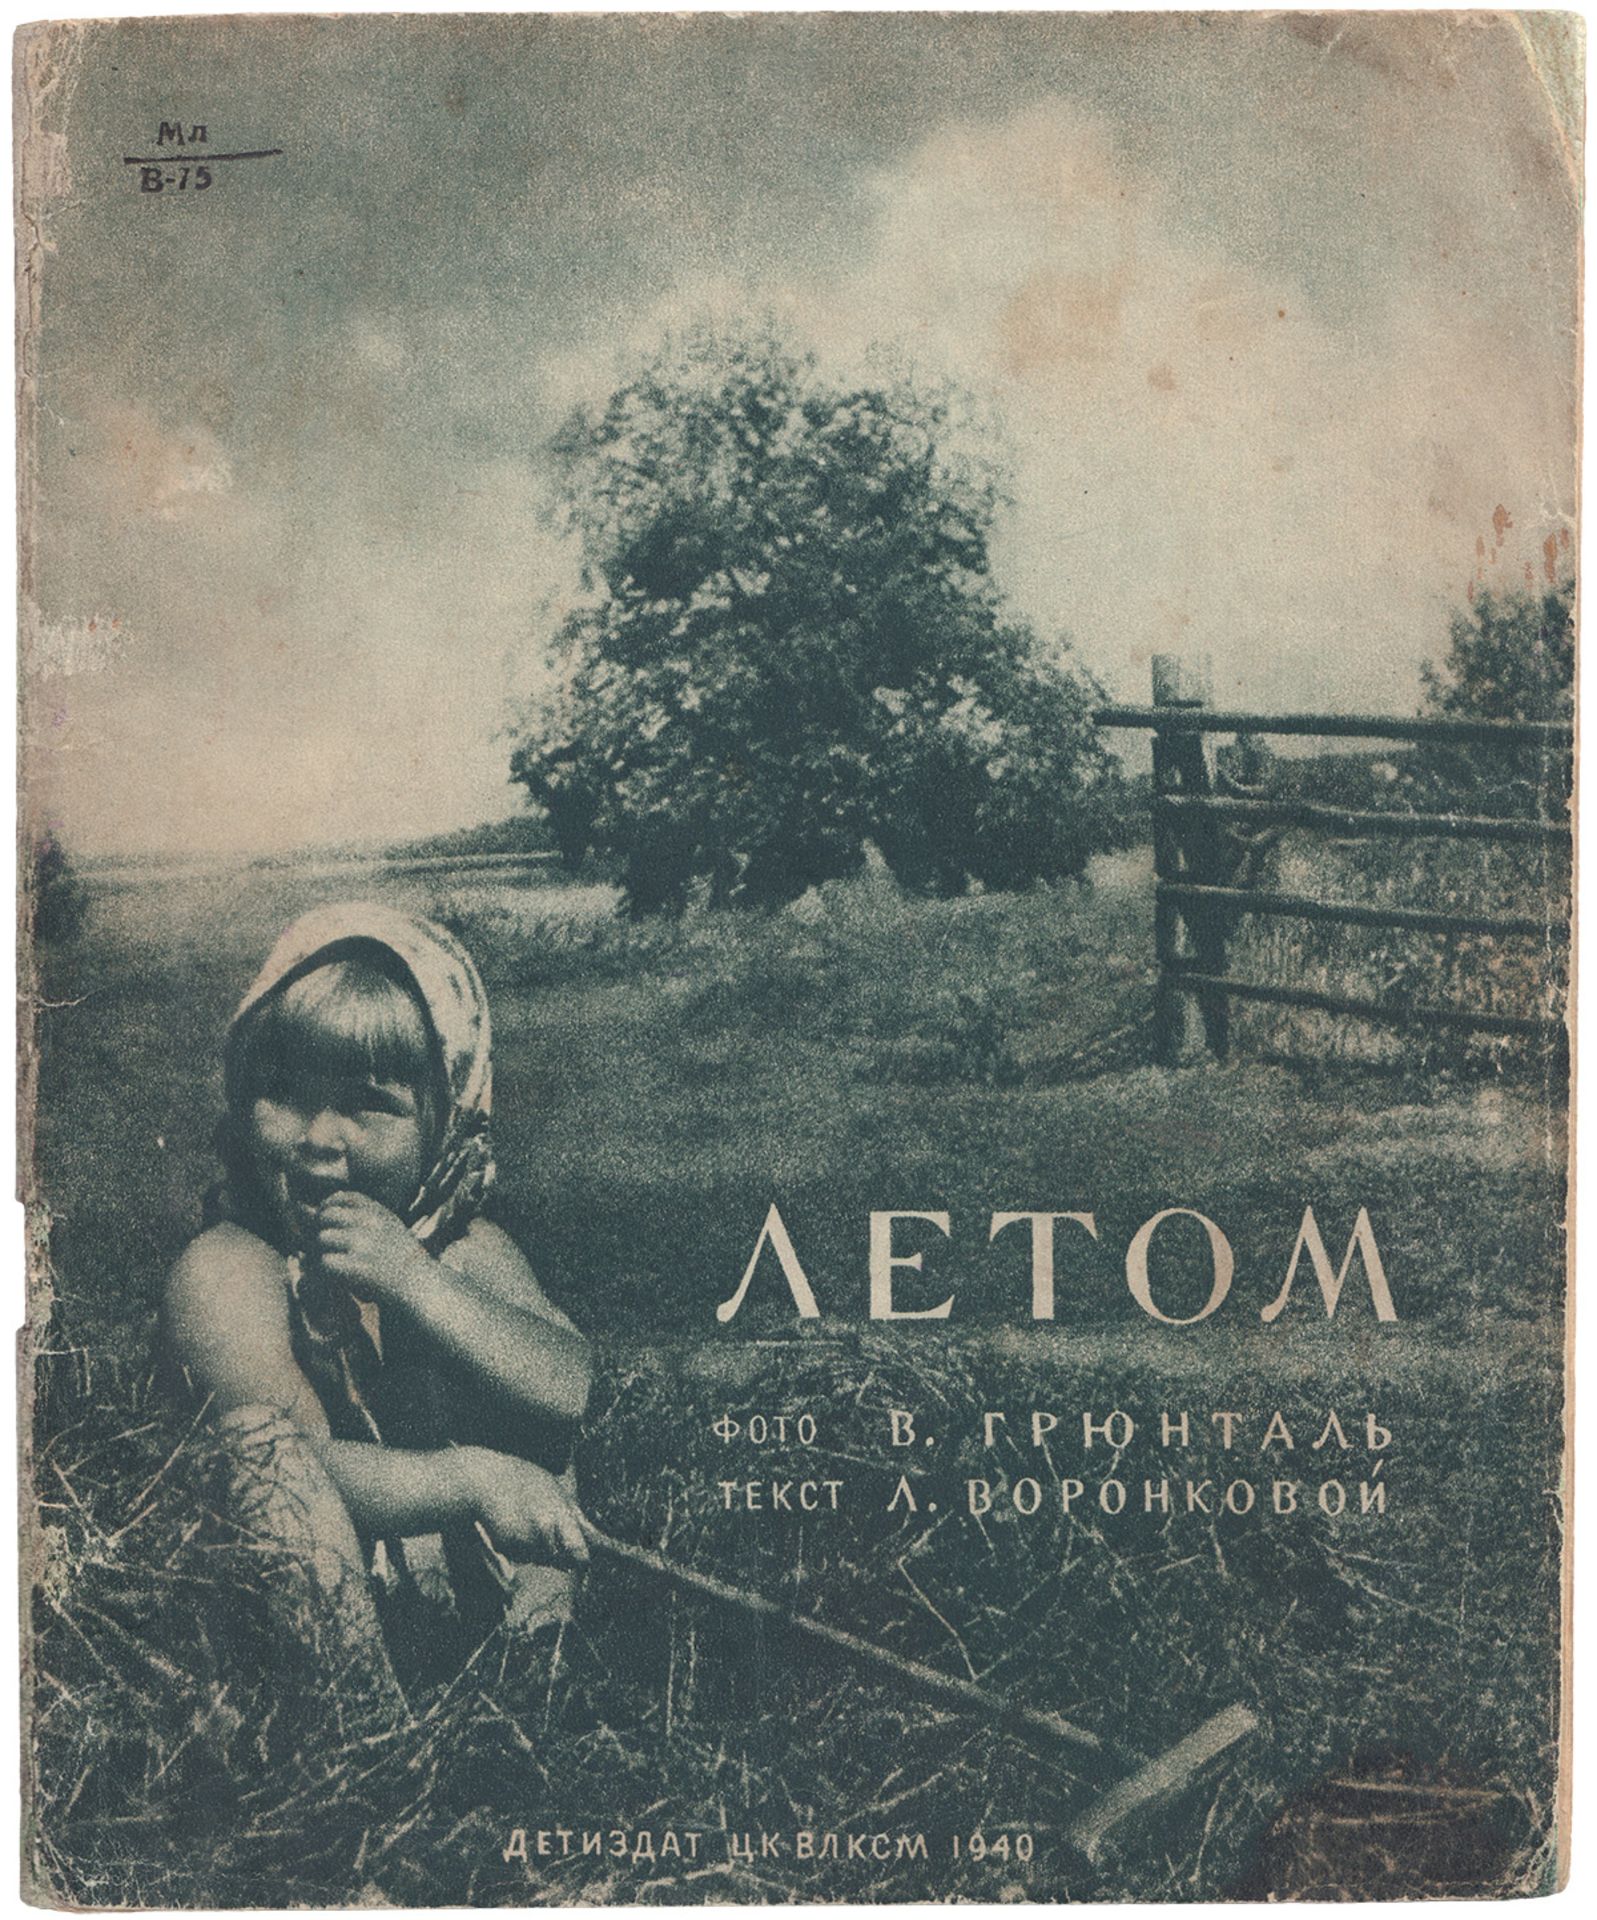 [Soviet] Voronkova, L.F. In The Summer [Stories] / Photo by V.Gruntale ; Text by V.Voronkova. â€“ Mo